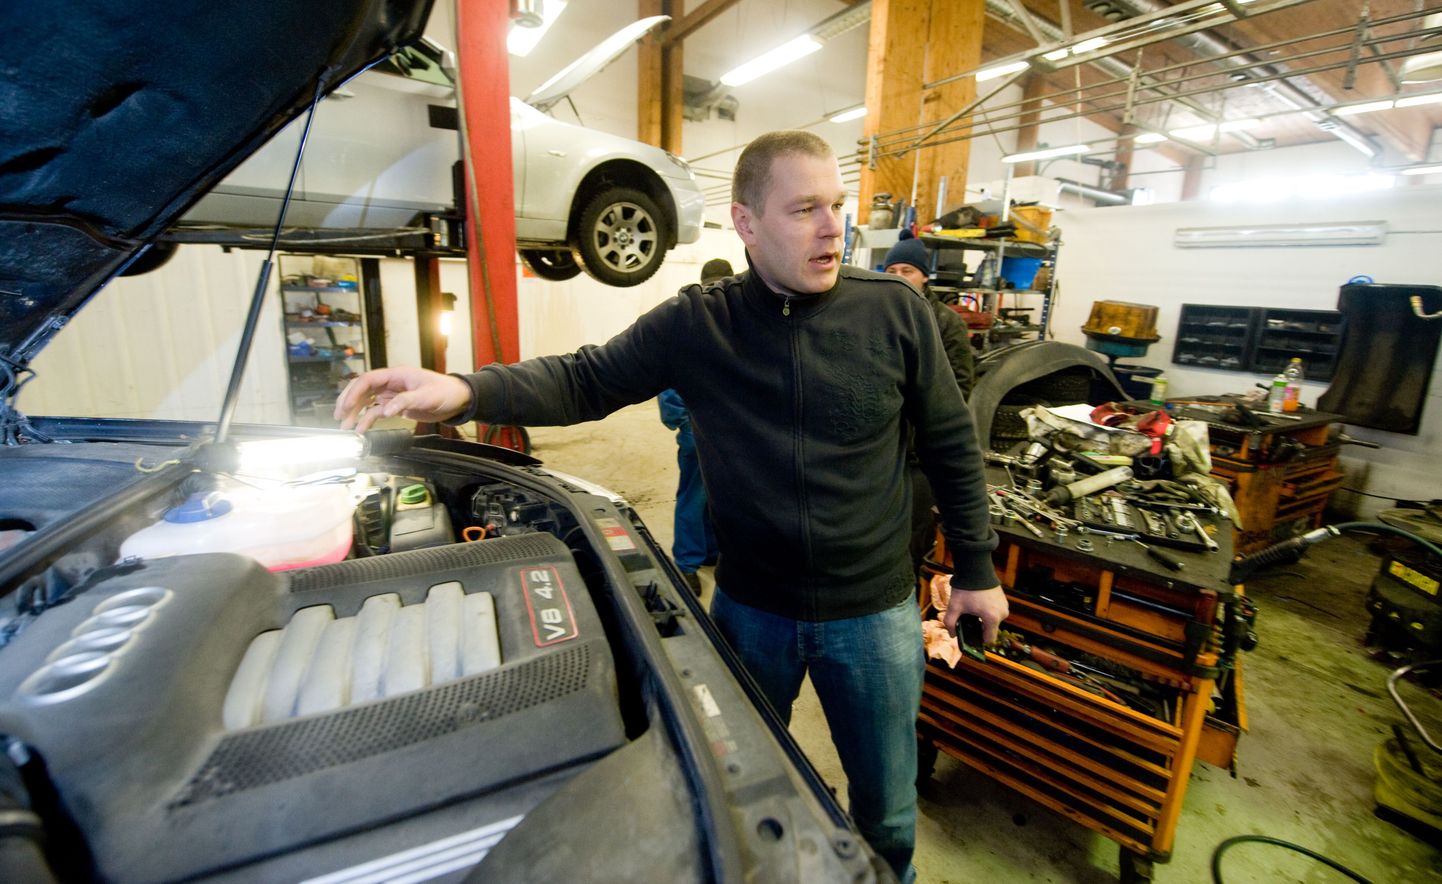 Autoremondikeskuse juhataja Fred Häling näitab sõidukit, mis toodi autoteenindusse külmast tingitud tõrgete tõttu.